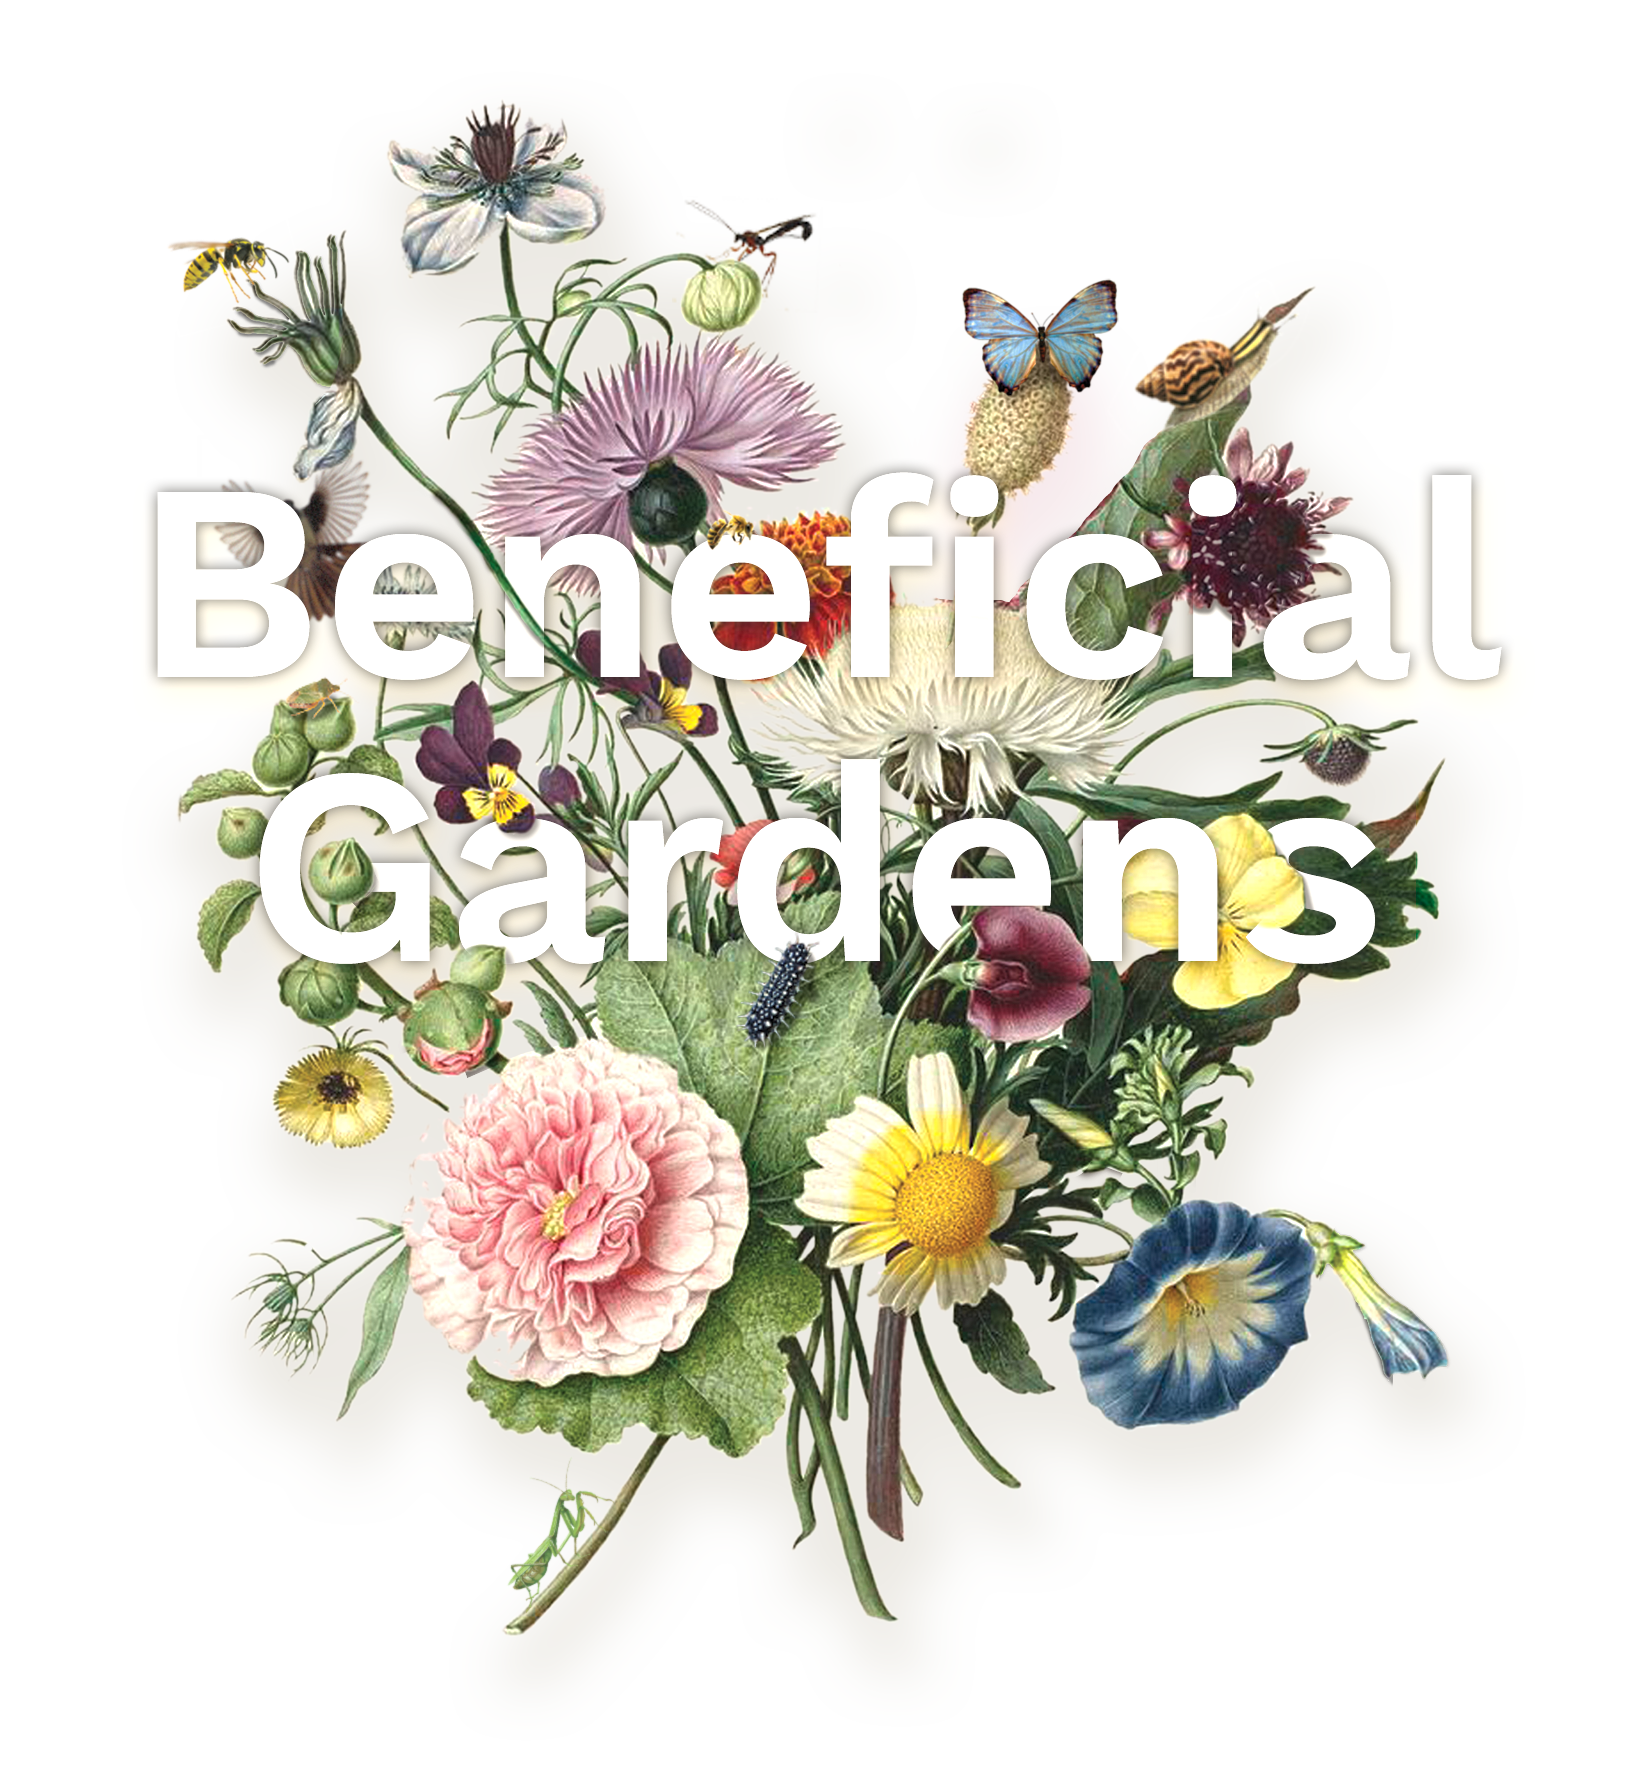 Beneficial Gardens